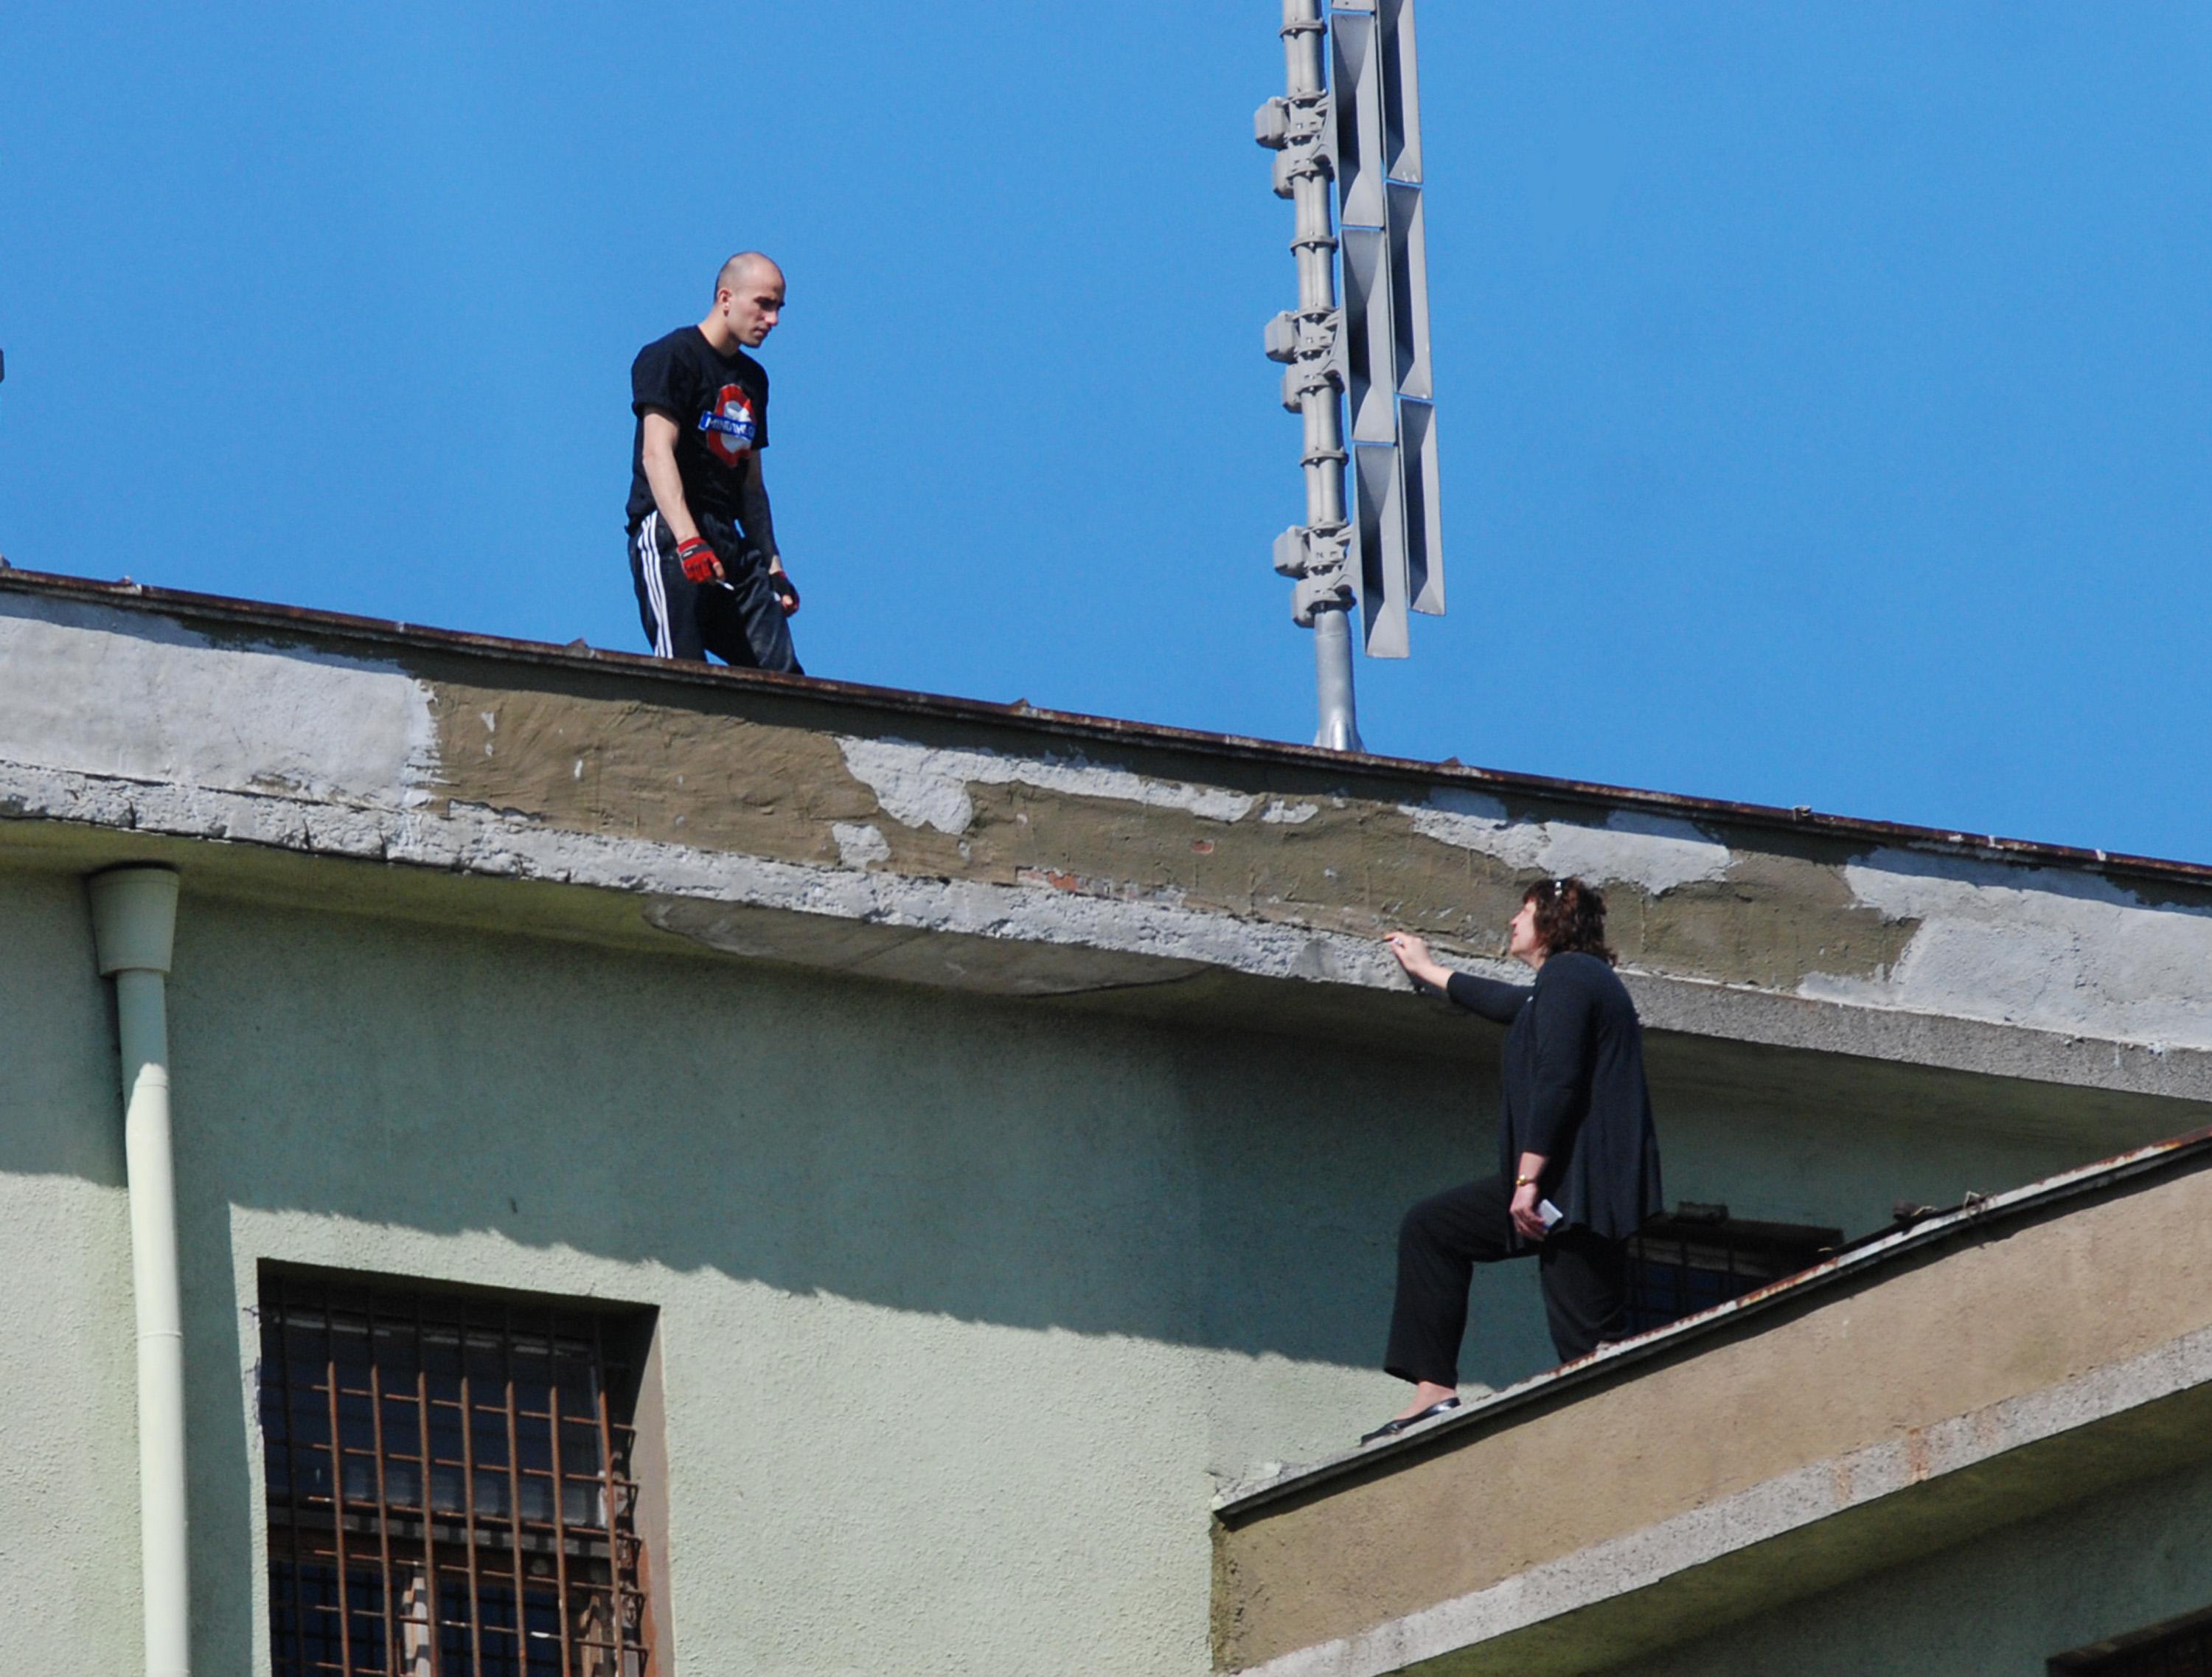 Затворник стоя 7 ч. на покрив, заплашвайки да скочи